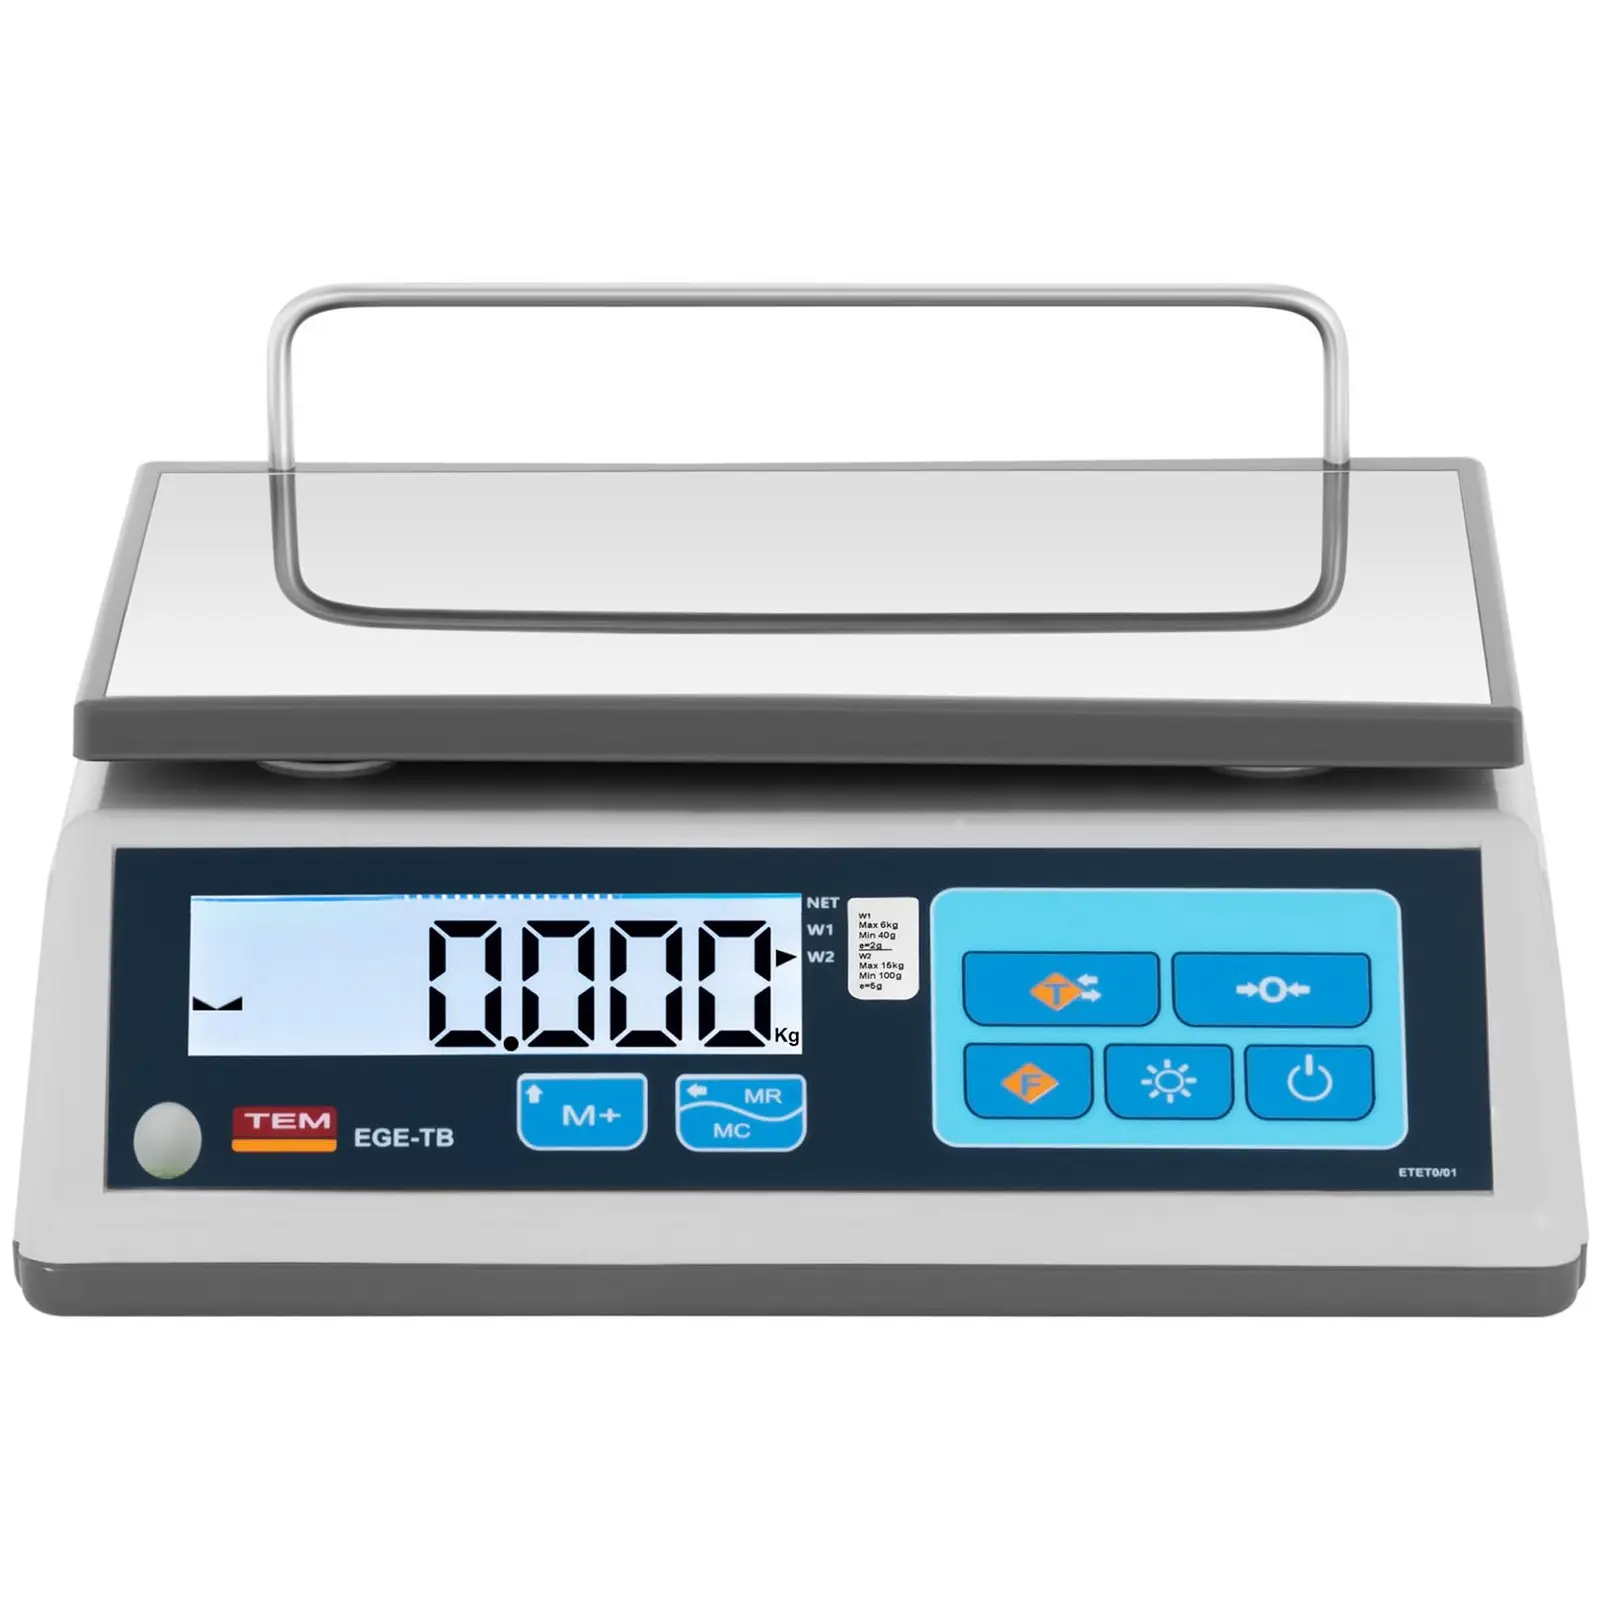 Asztali mérleg - hitelesített - 15 kg / 5 g - LCD - memória